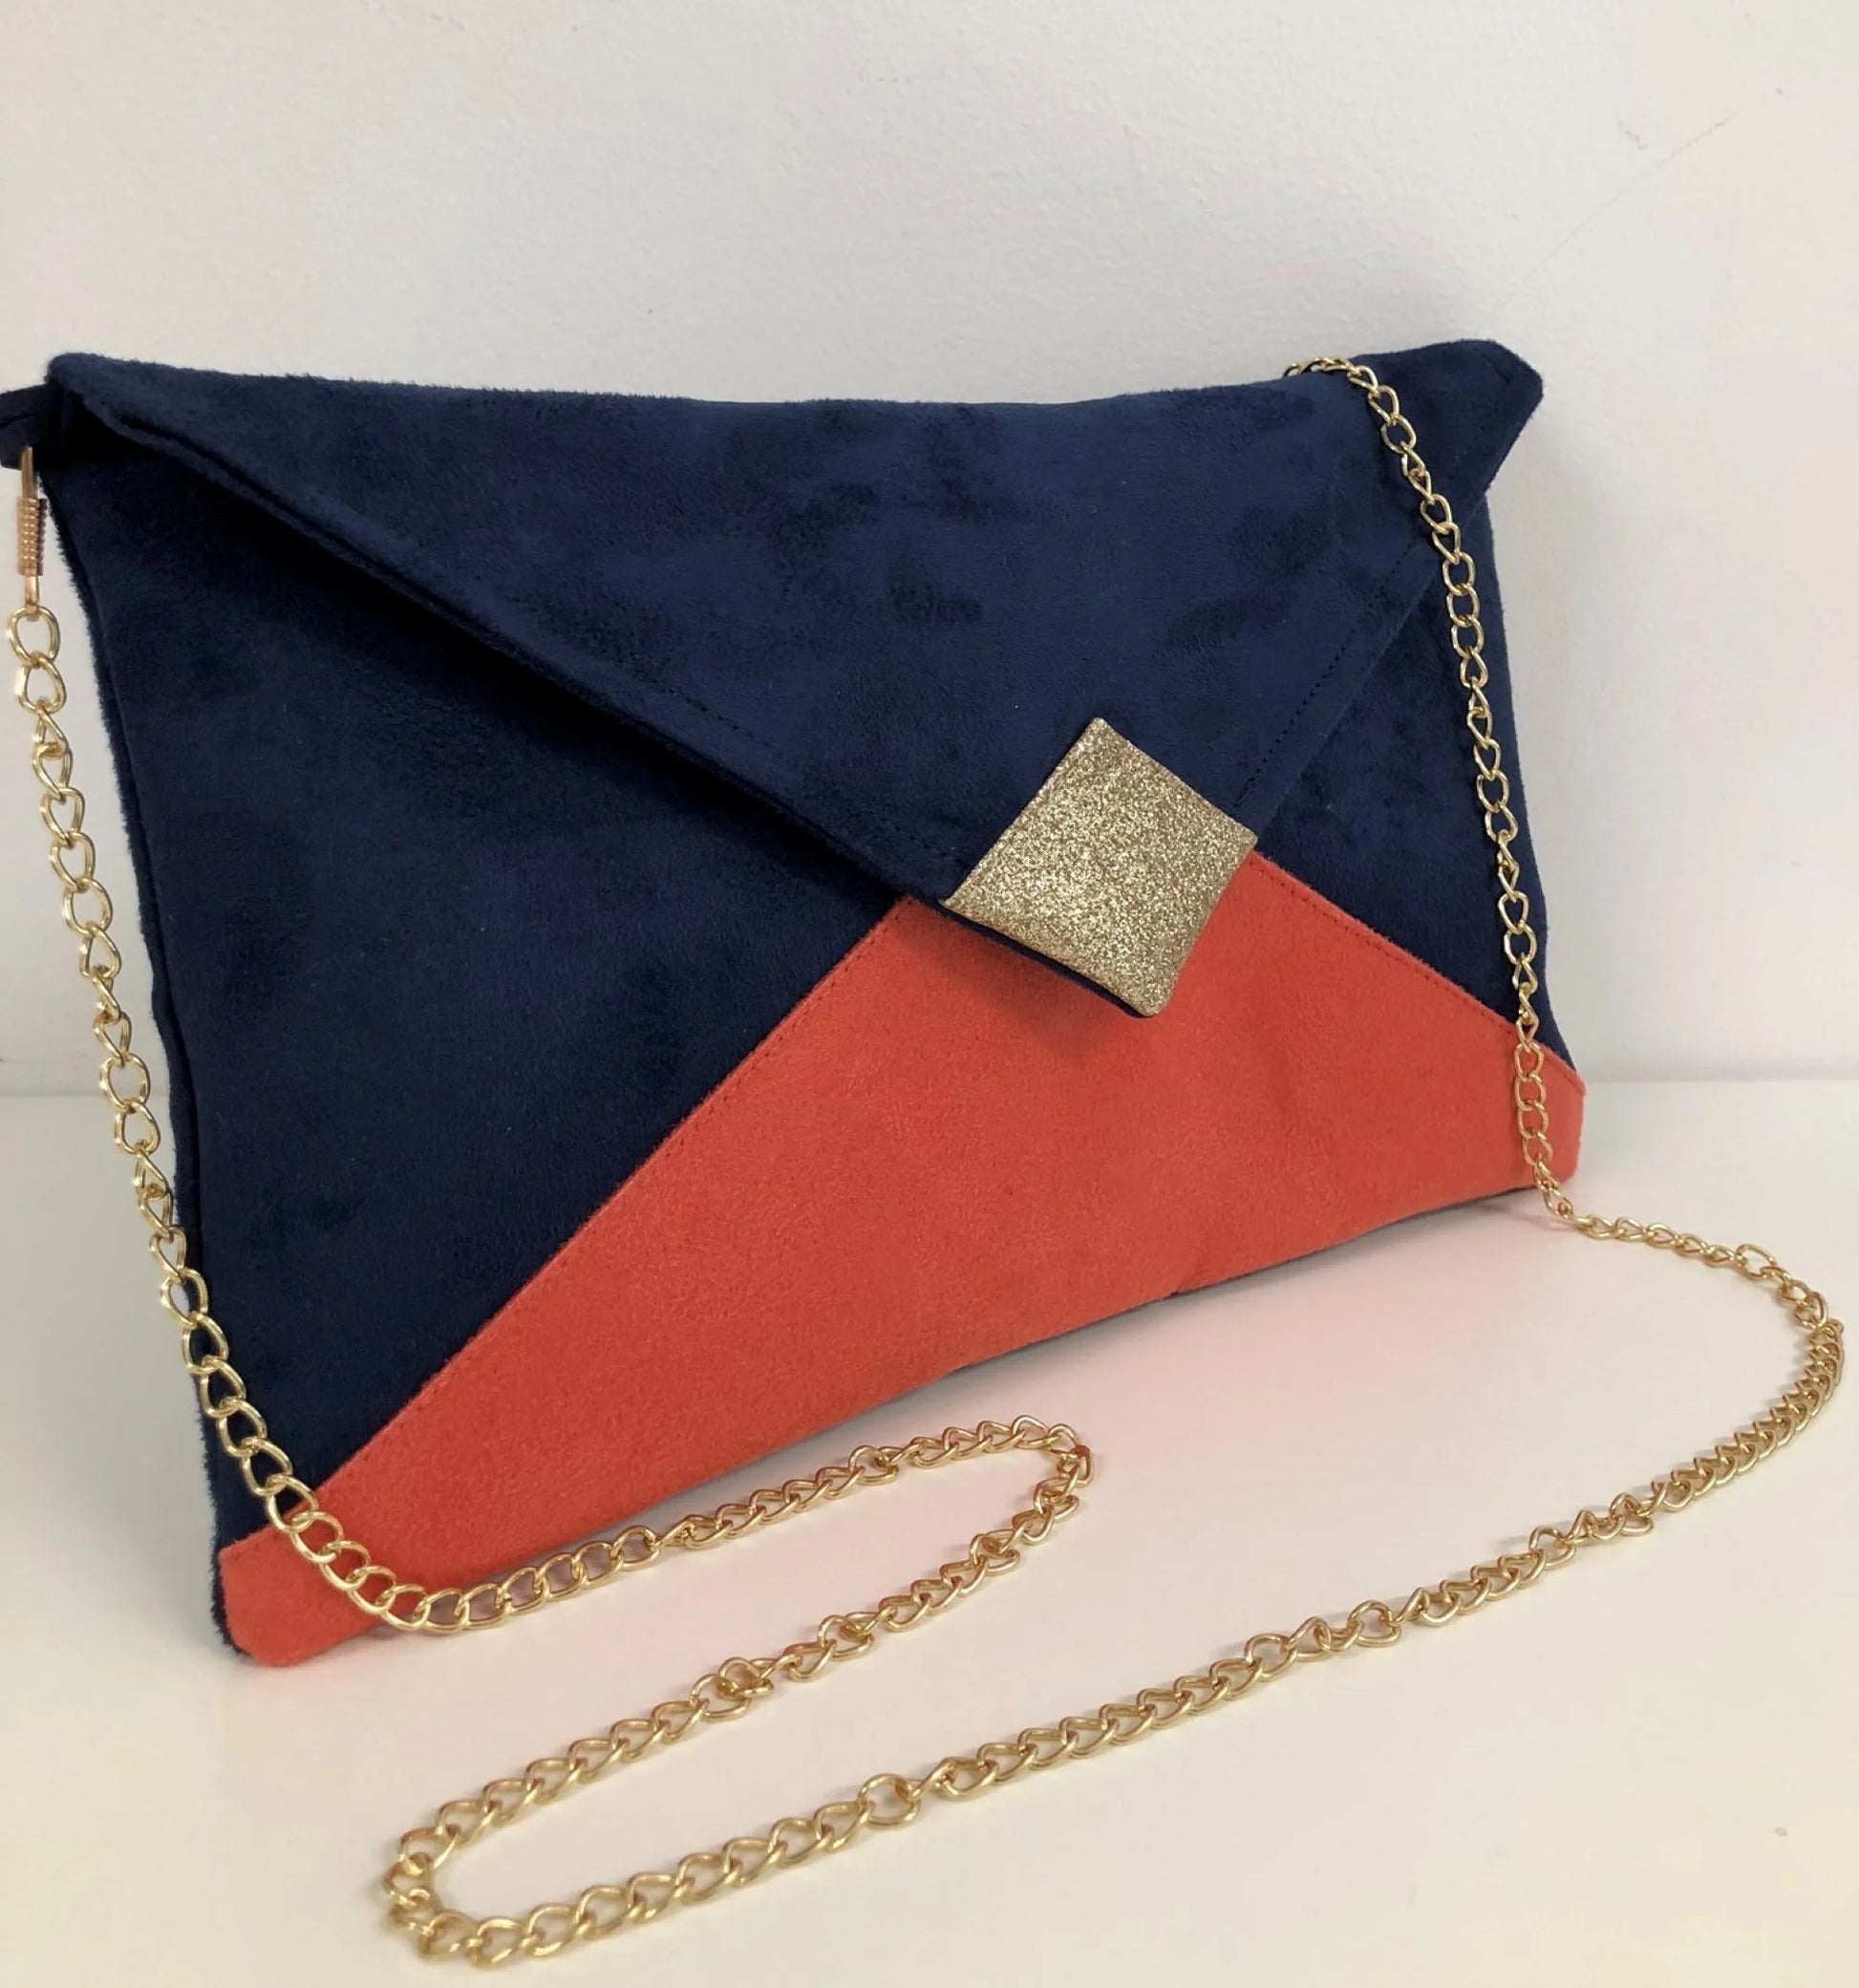 Le sac pochette Isa bleu marine et corail à paillettes dorées avec chainette amovible.